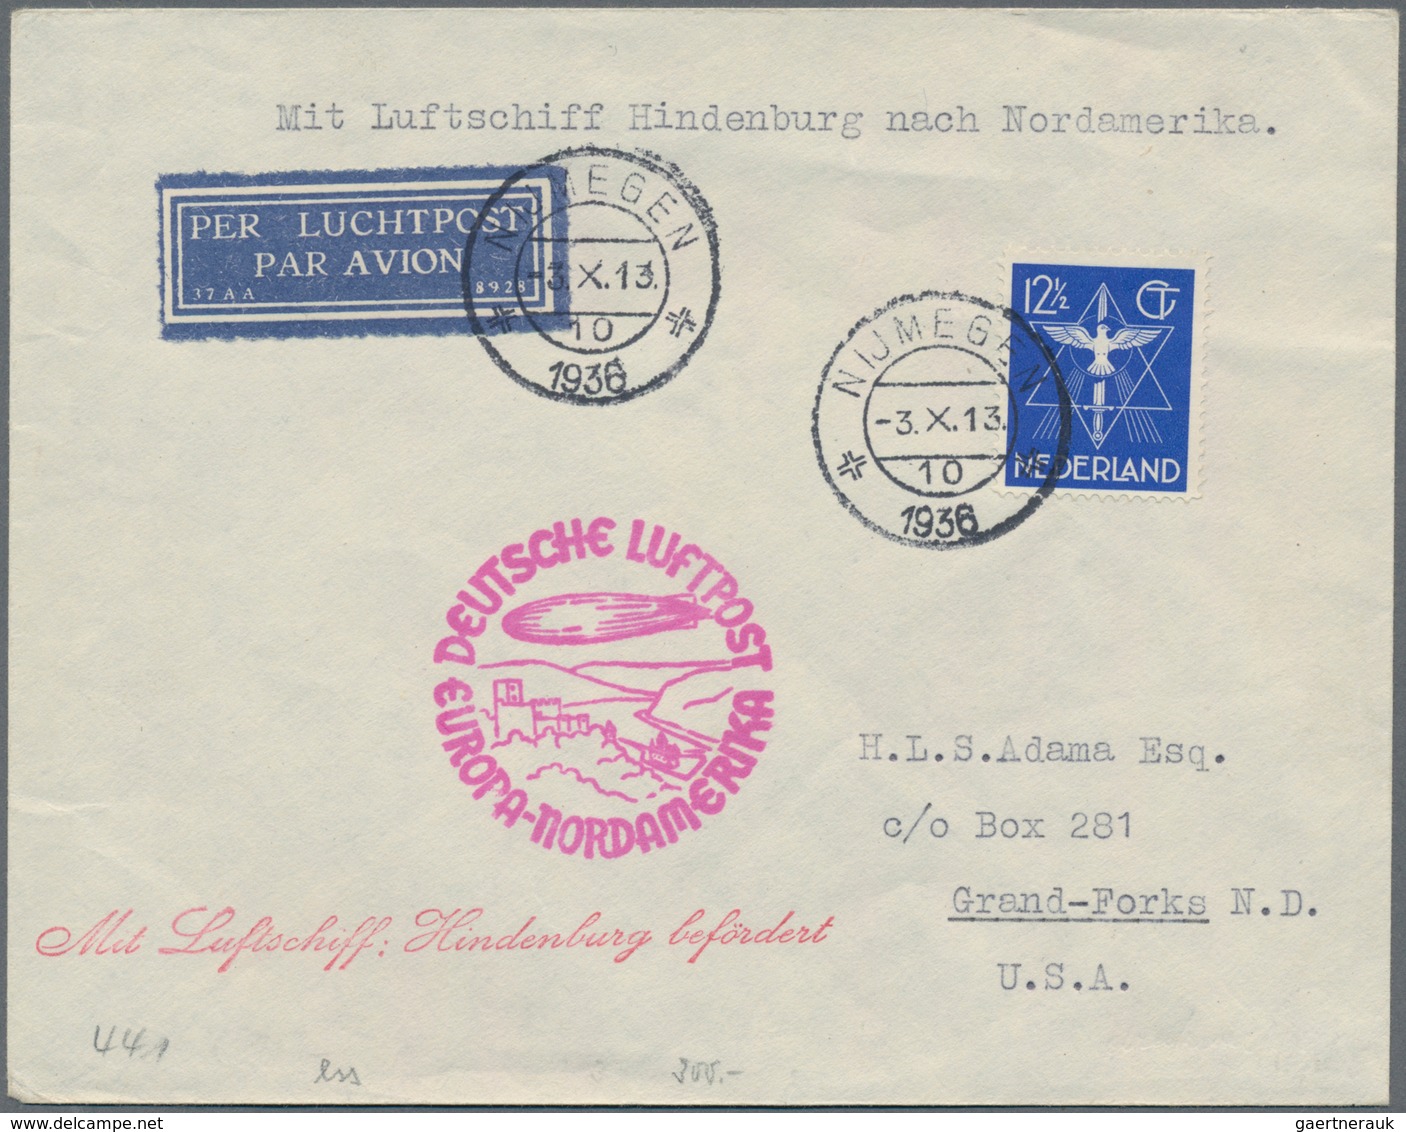 Zeppelinpost Deutschland: 1912/36, Partie von 9 Zeppelin- bzw Flugpostbelegen, dabei halbamtl Rhein-